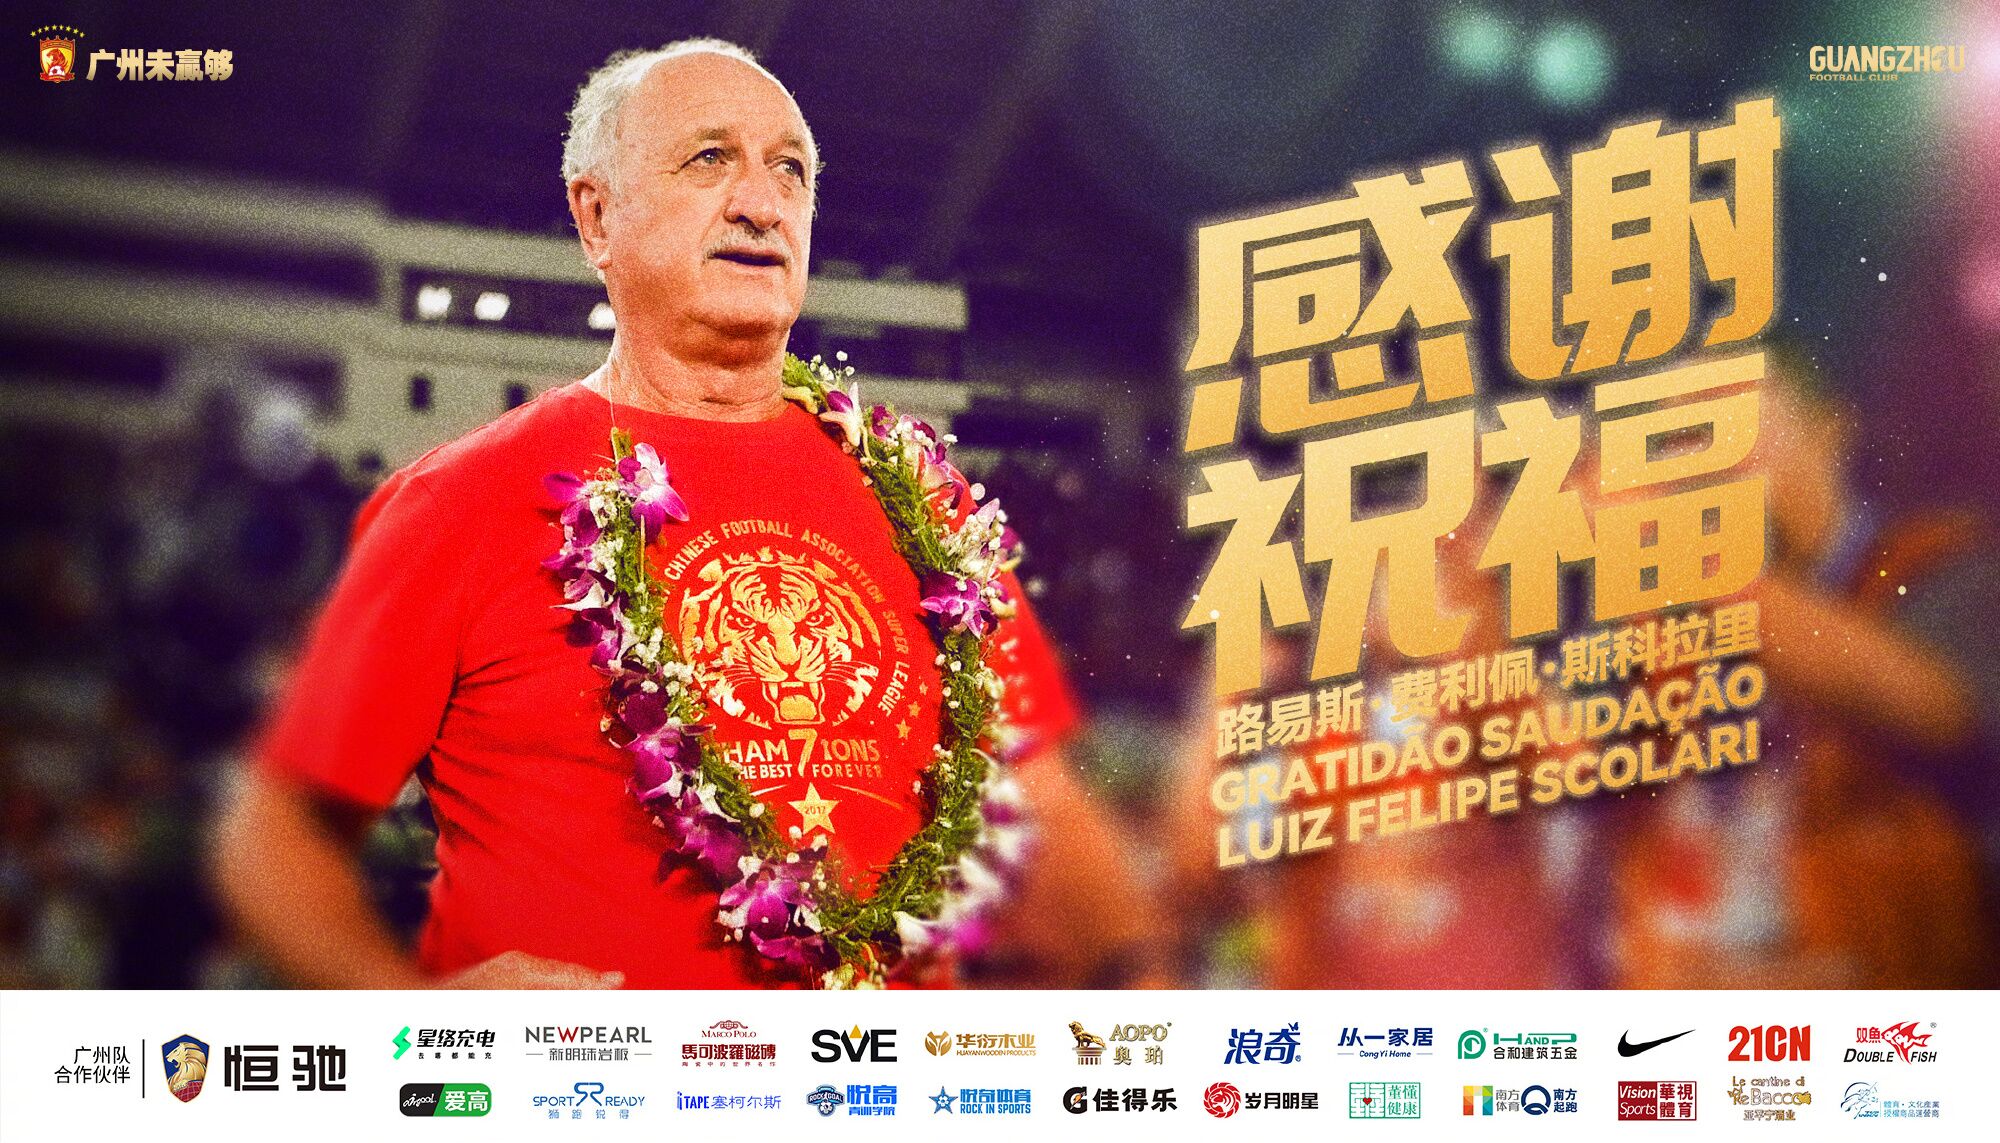 斯科拉里退休广州队官方送祝福:感谢为中国足球所做的贡献!